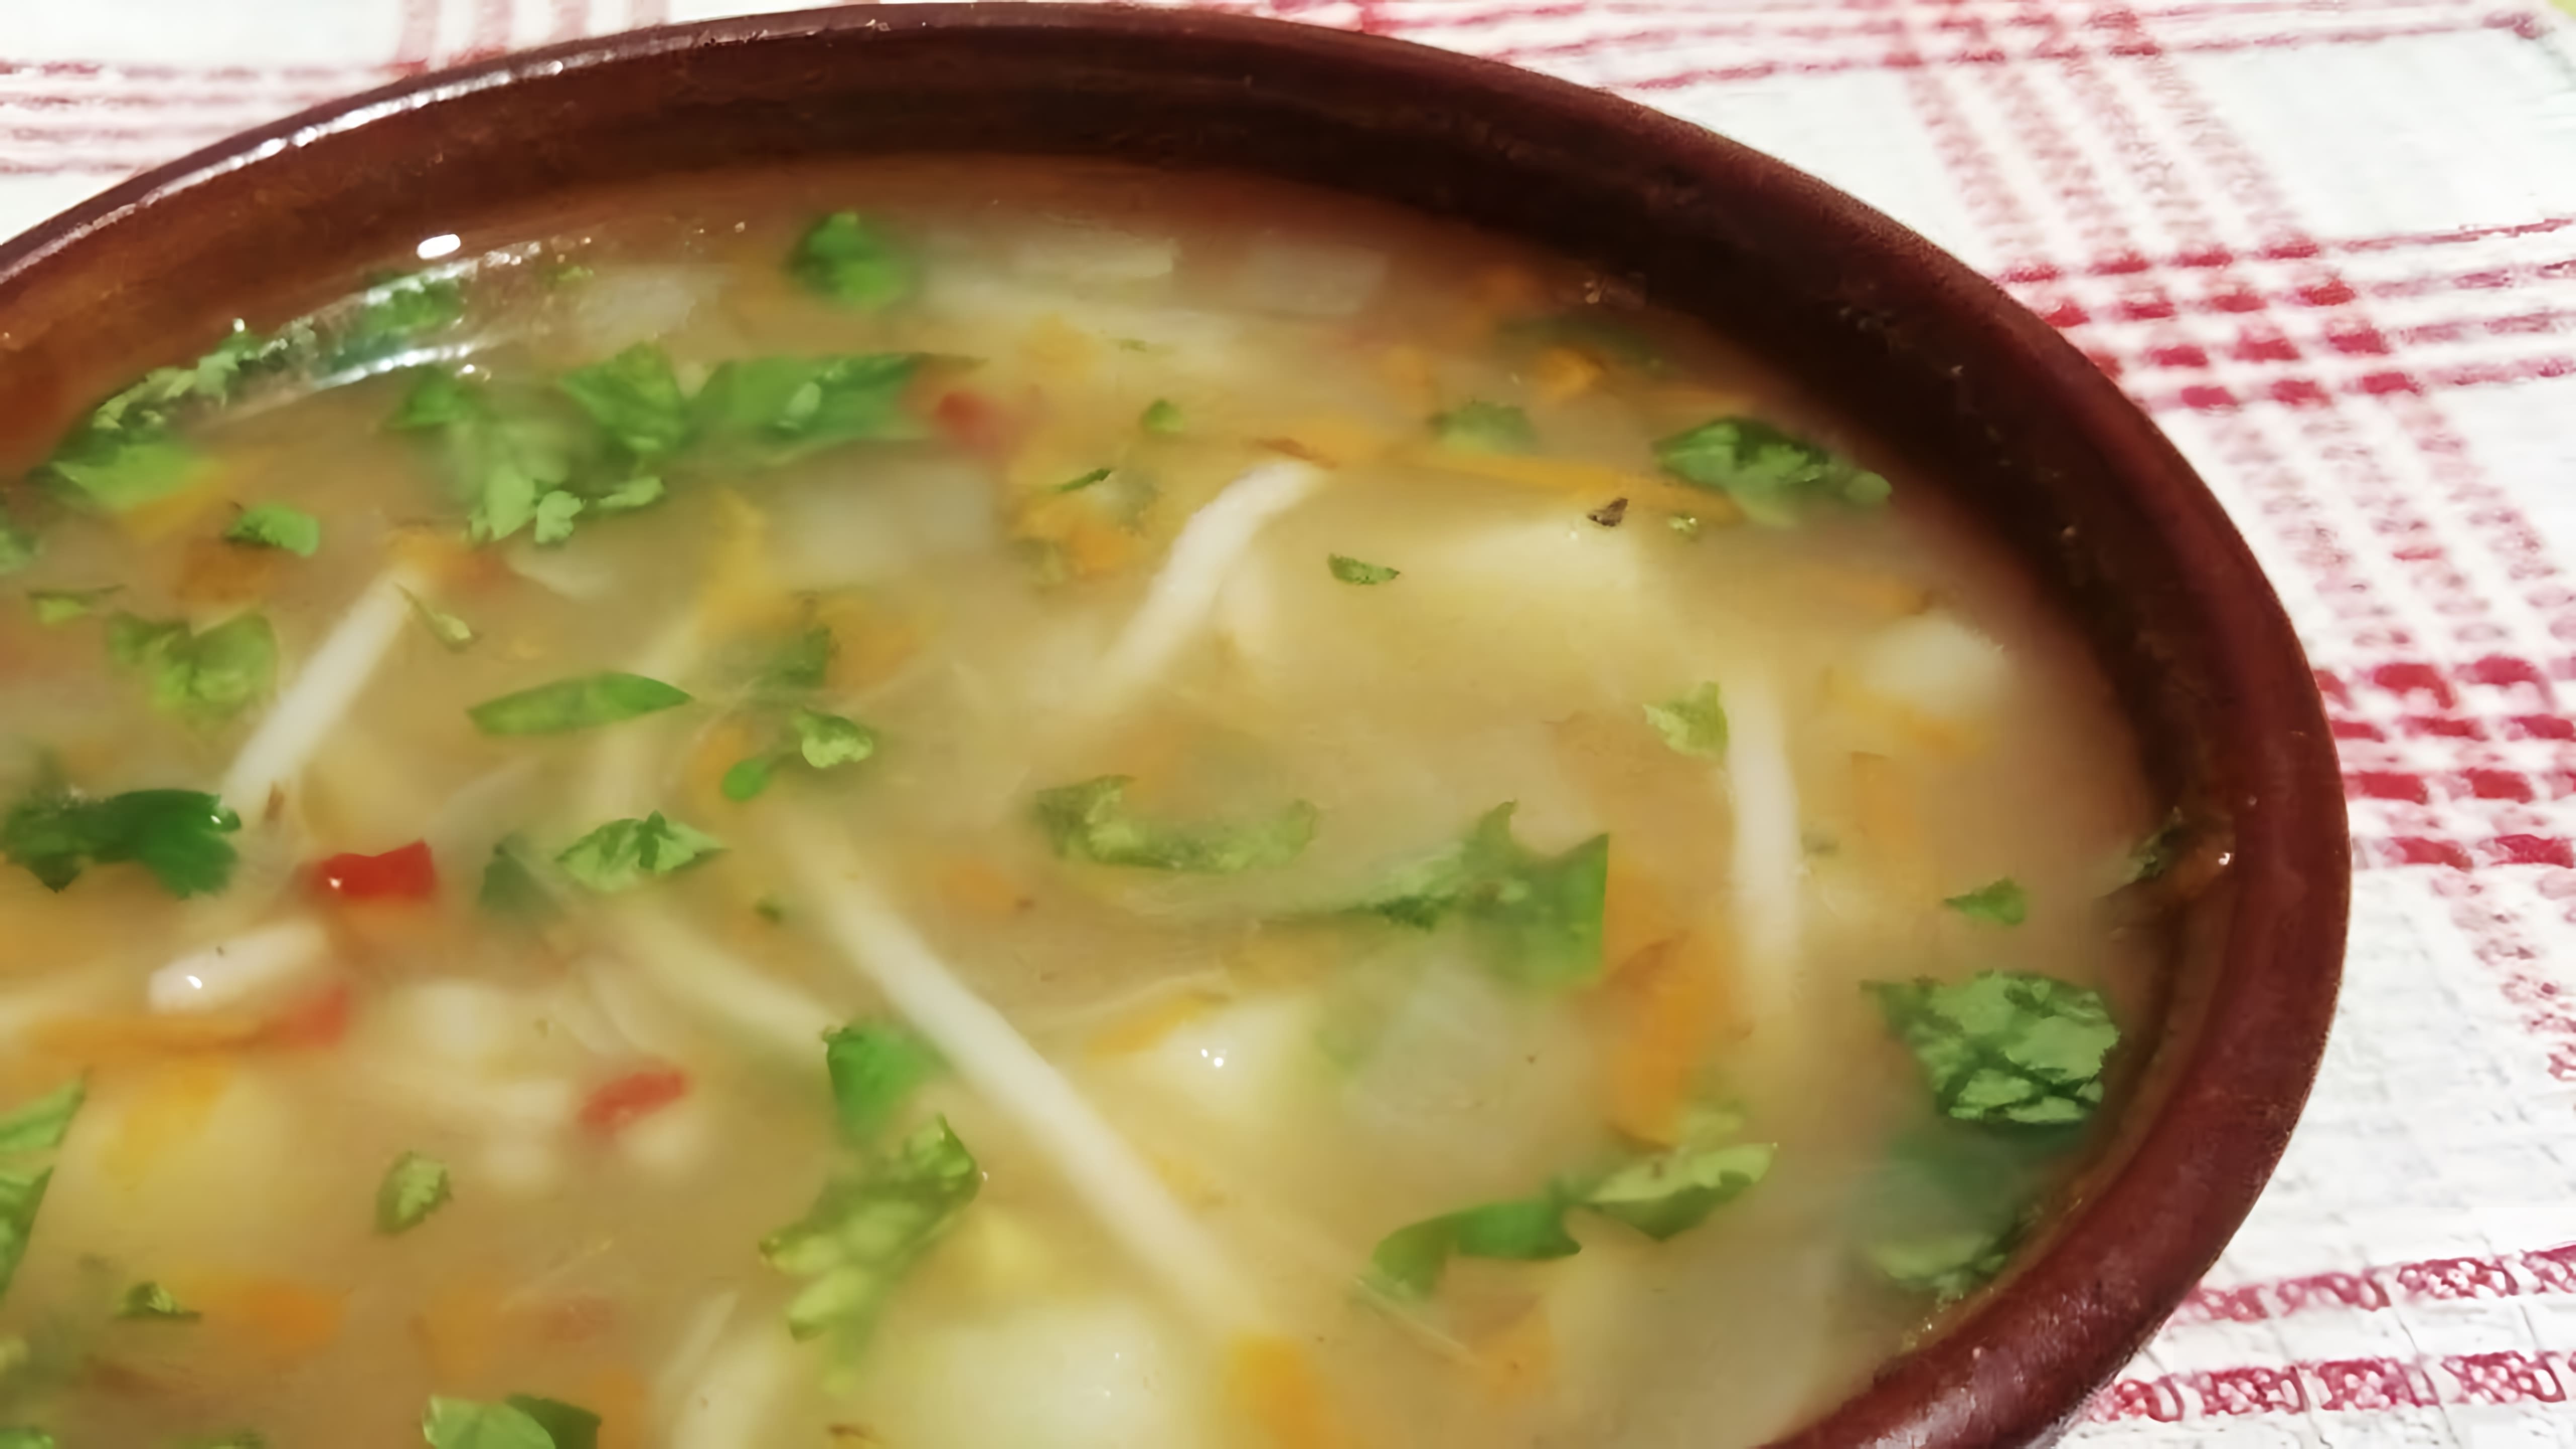 В этом видео-ролике будет показан рецепт постного супа, который получается вкусным и ароматным, несмотря на отсутствие масла